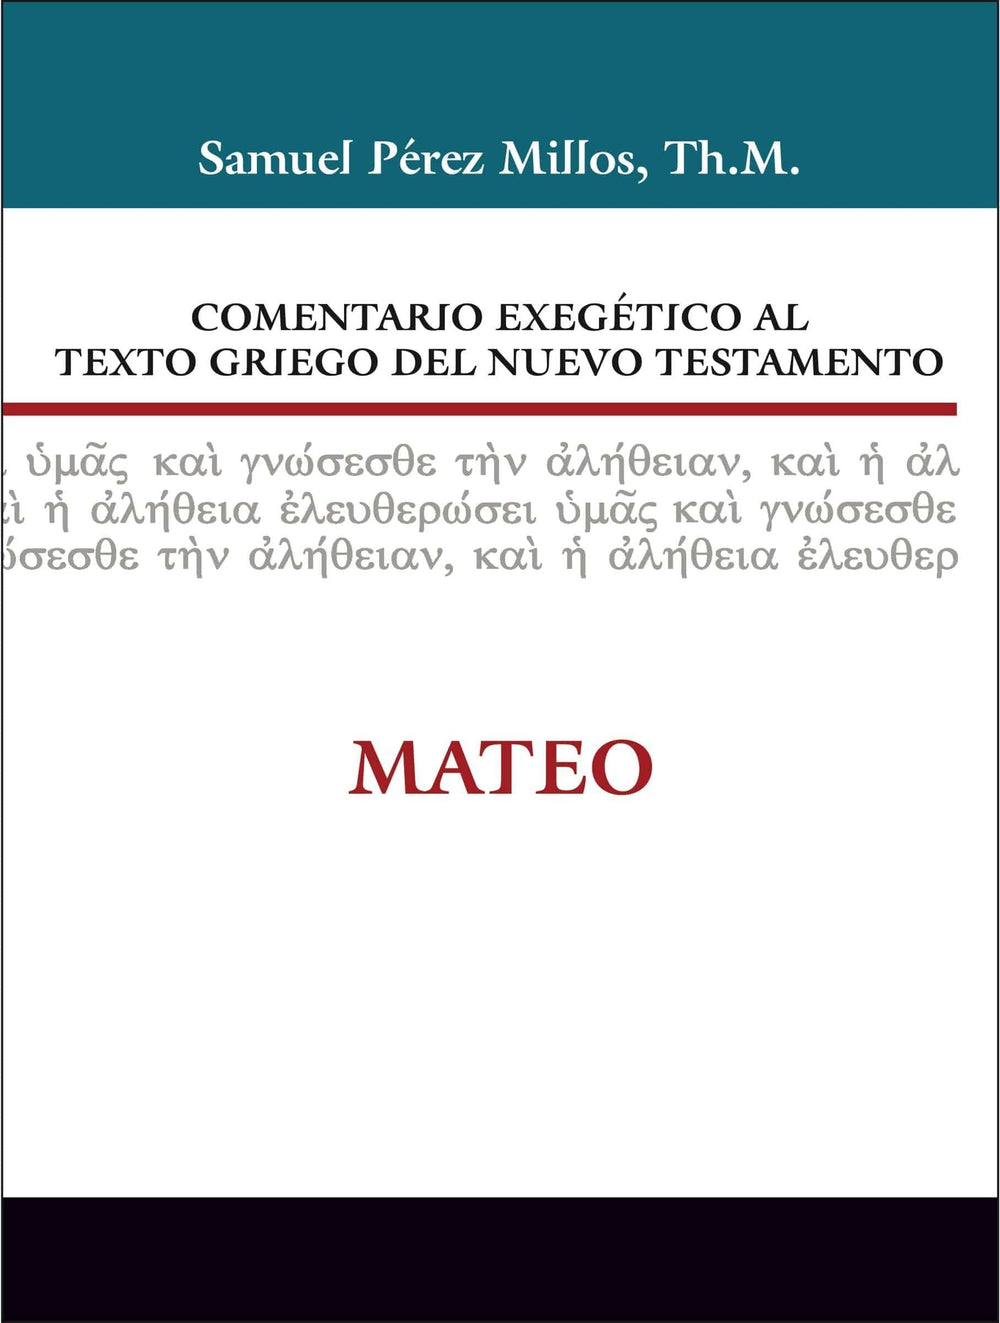 Comentario Exegético al Texto Griego del Nuevo Testamento: Mateo - Samuel Millos - Pura Vida Books